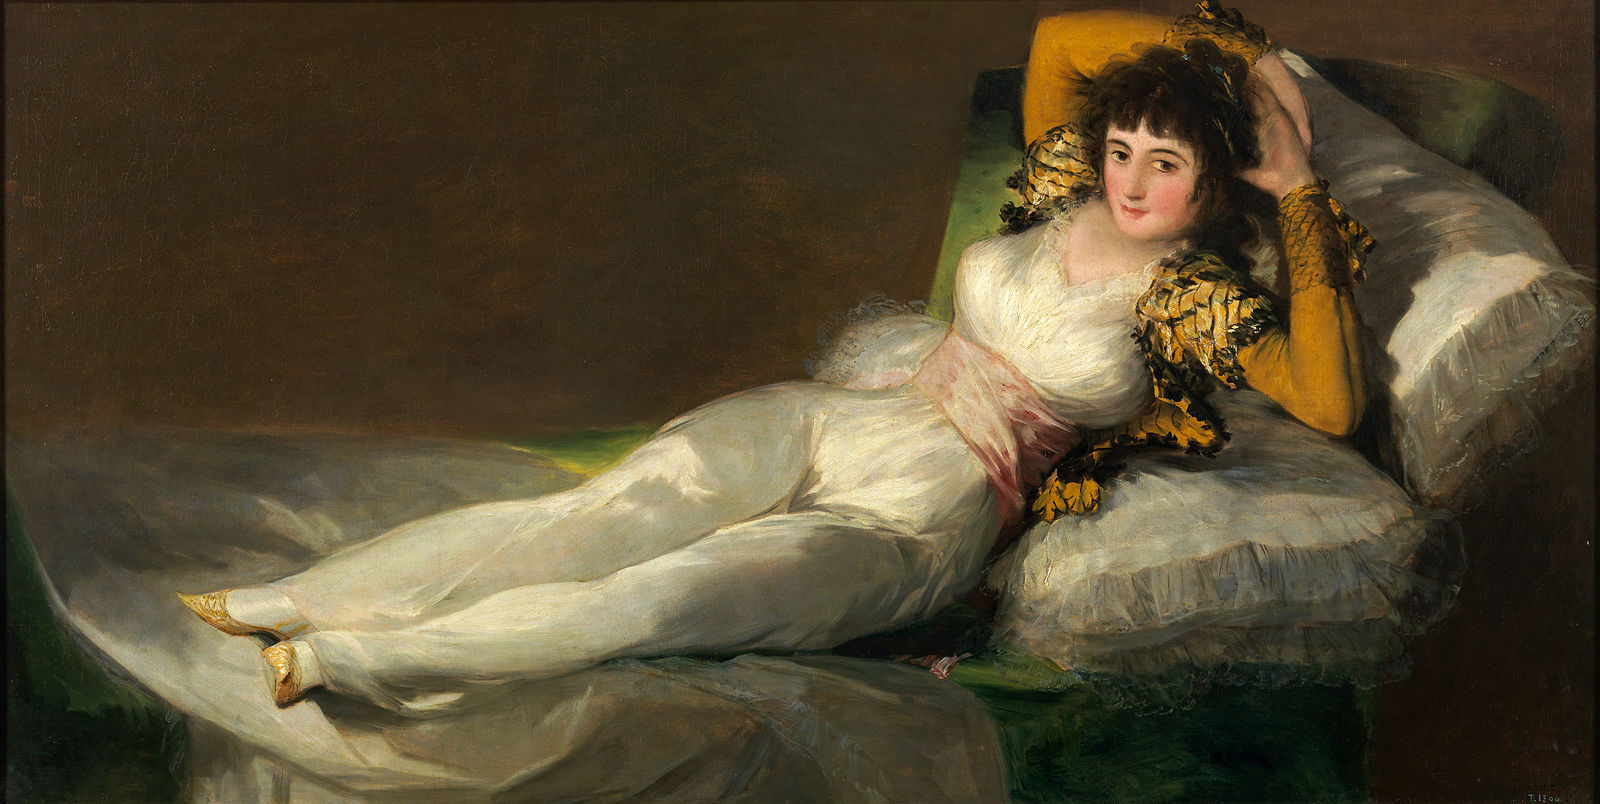 Una mujer reclinada vestida con vestido de lino blanco